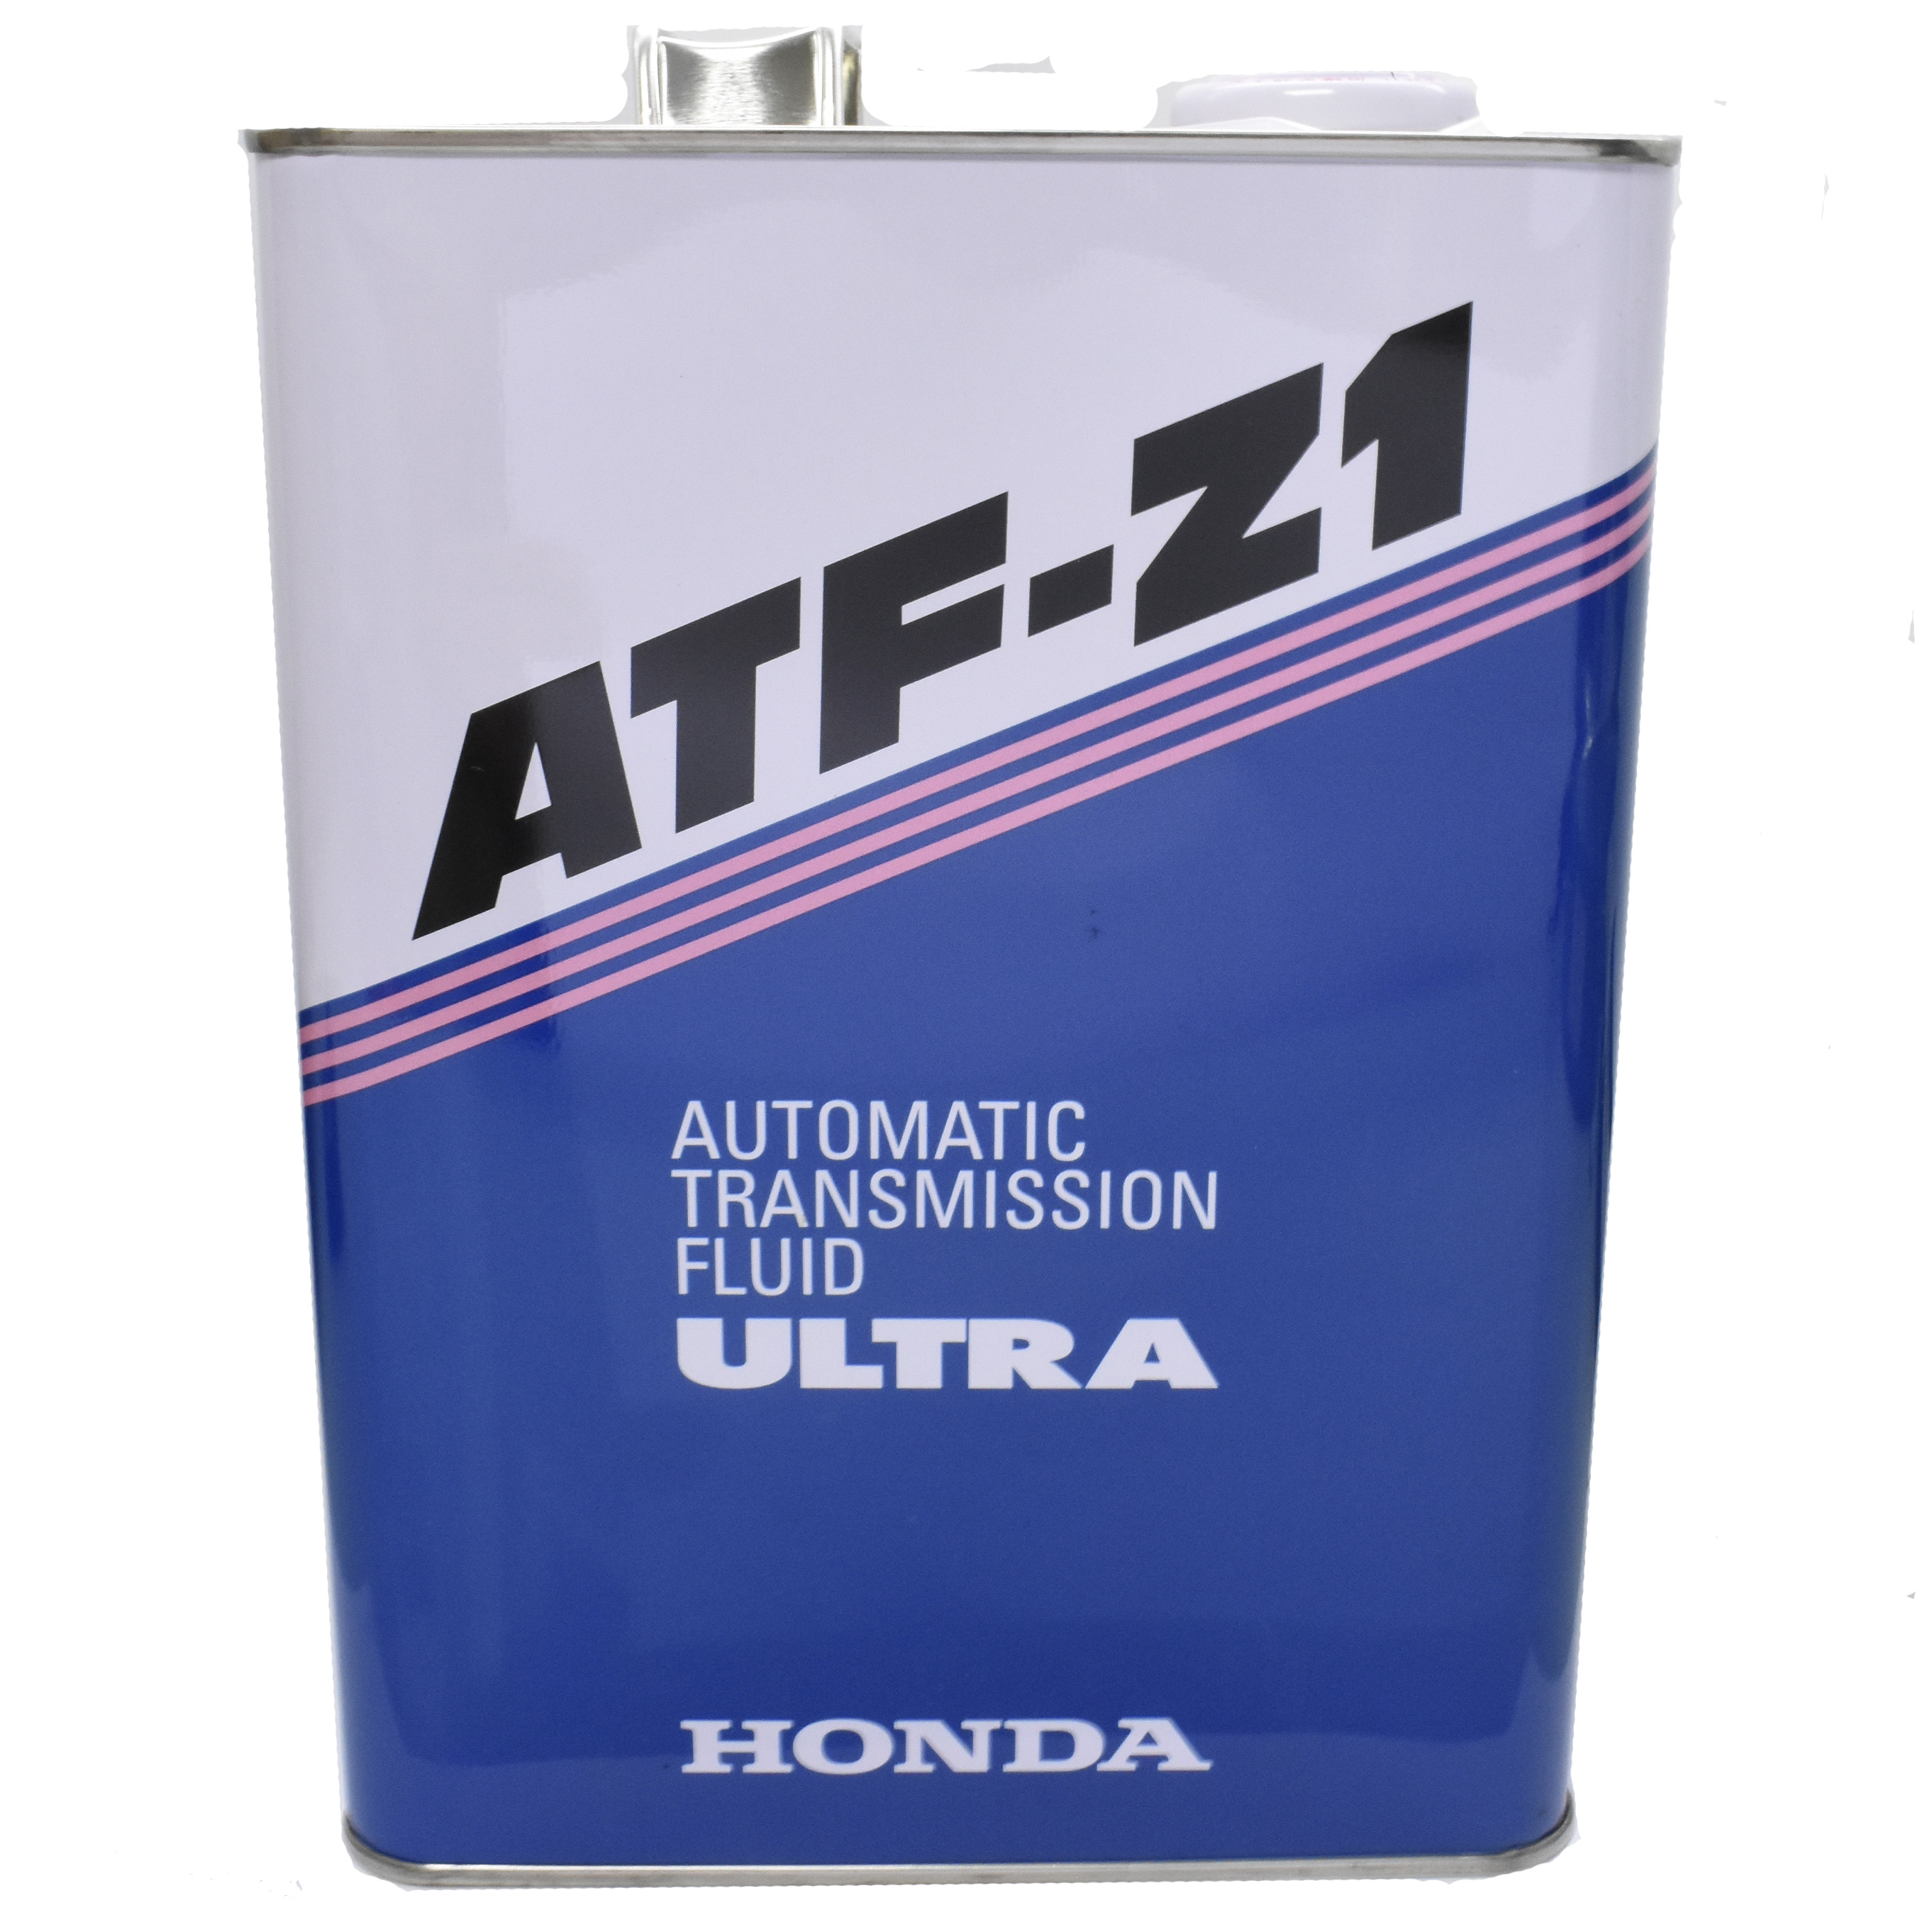 Atf z 1. Хонда ATF z1. Honda Ultra ATF-z1. Honda ATF Z-1. 08266-99904 Honda ATF Z-1.